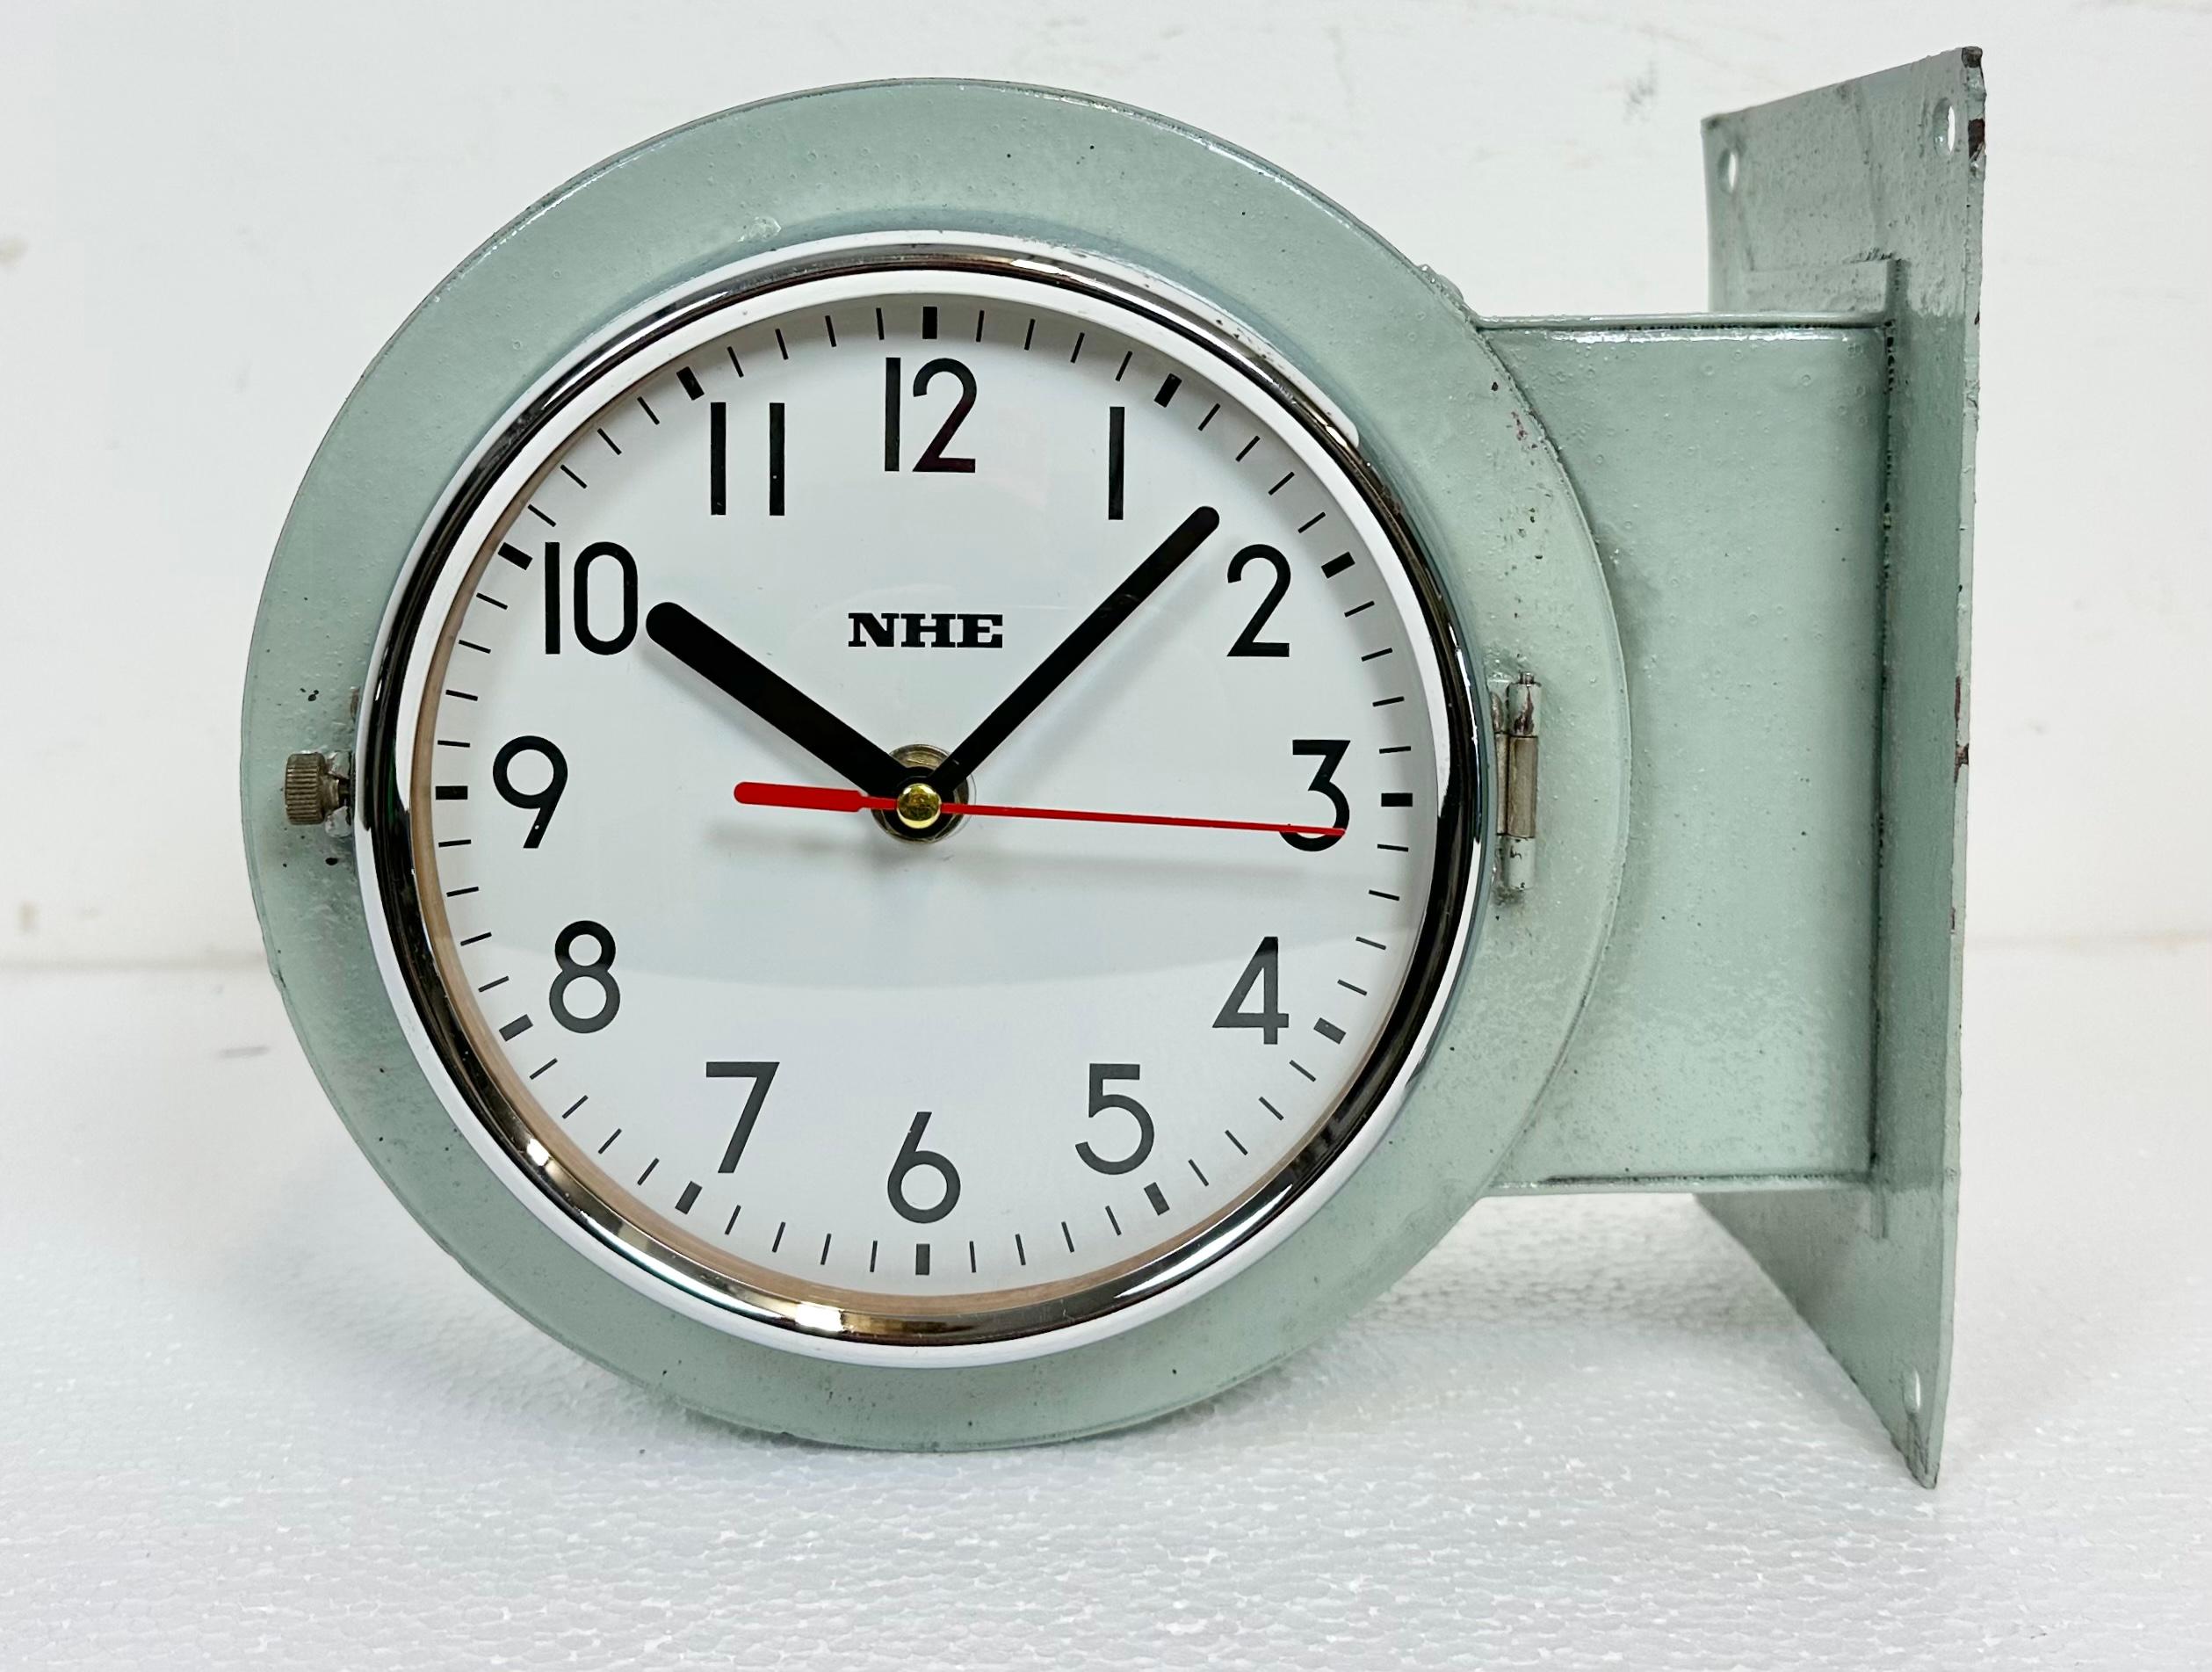 Vintage NHE ( NIPPON HAKUYO electronics,ltd. ) Marine-Nebenuhr, entworfen in den 1980er Jahren in Japan. Diese Uhren wurden auf großen japanischen Tankern und Frachtschiffen eingesetzt. Sie hat ein hellgrünes Metallgehäuse, ein Metallzifferblatt und